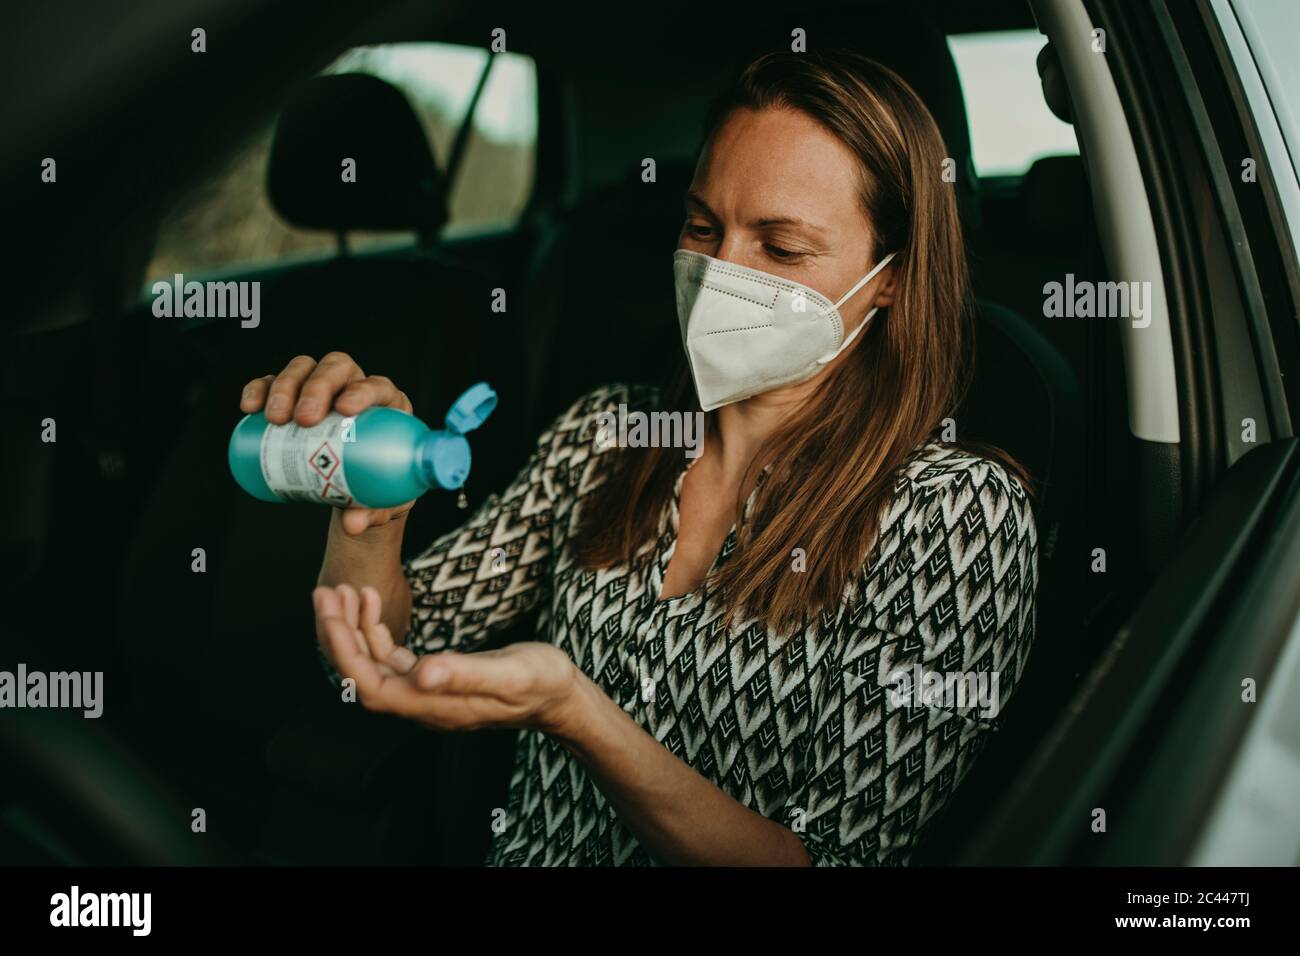 Femme adulte de taille moyenne avec masque de protection utilisant un assainisseur en voiture Banque D'Images